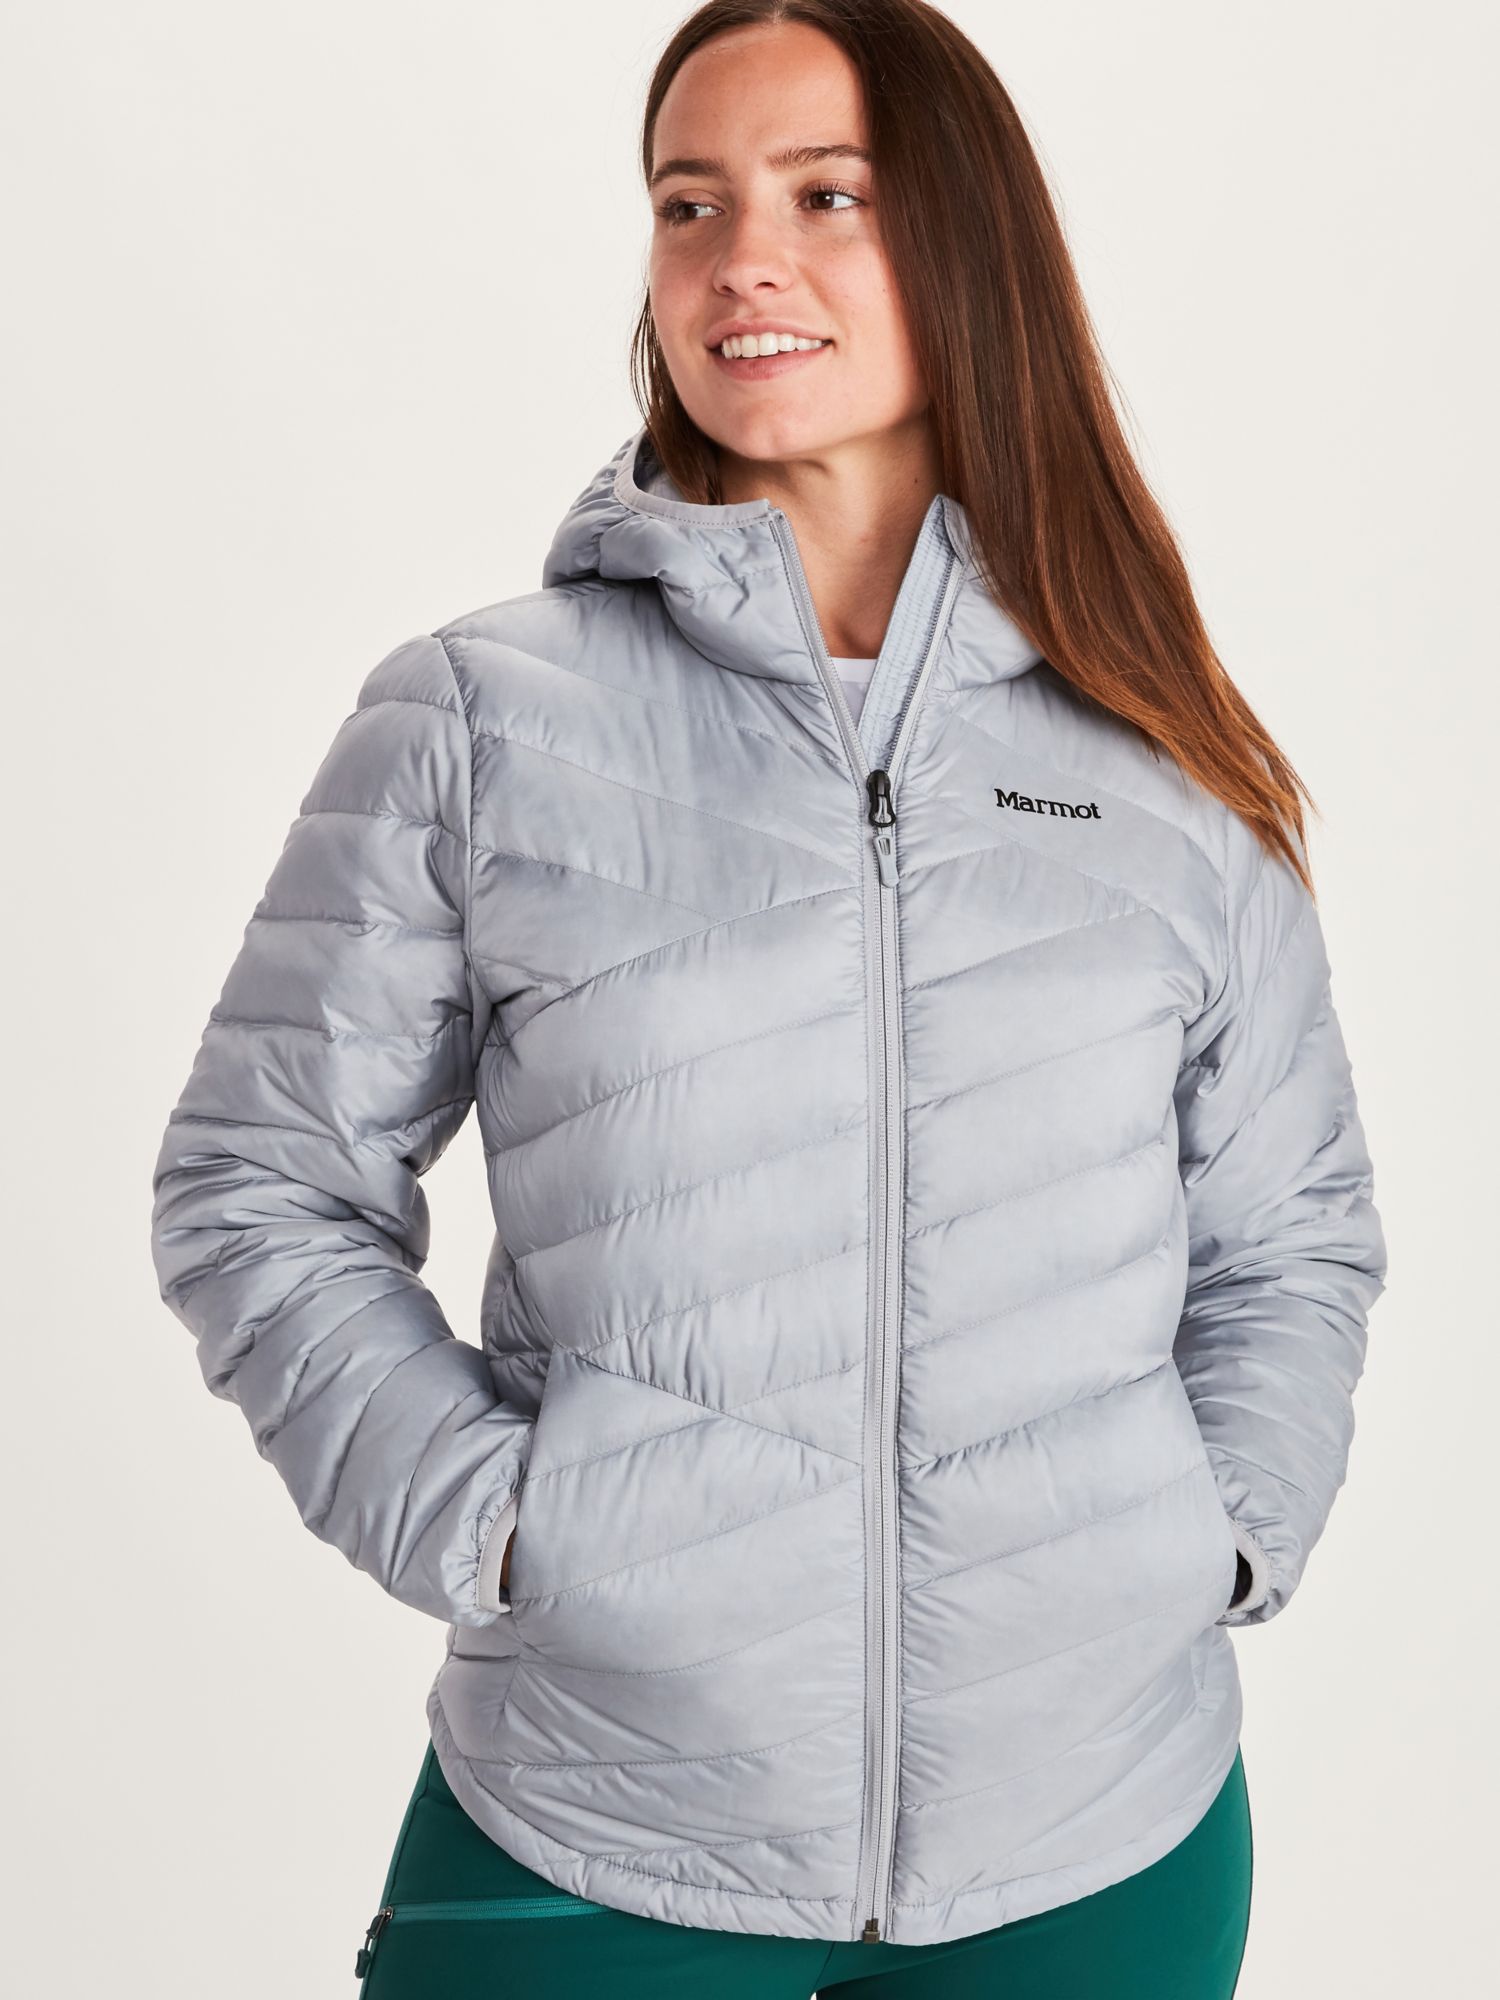 marmot women's hooded jacket